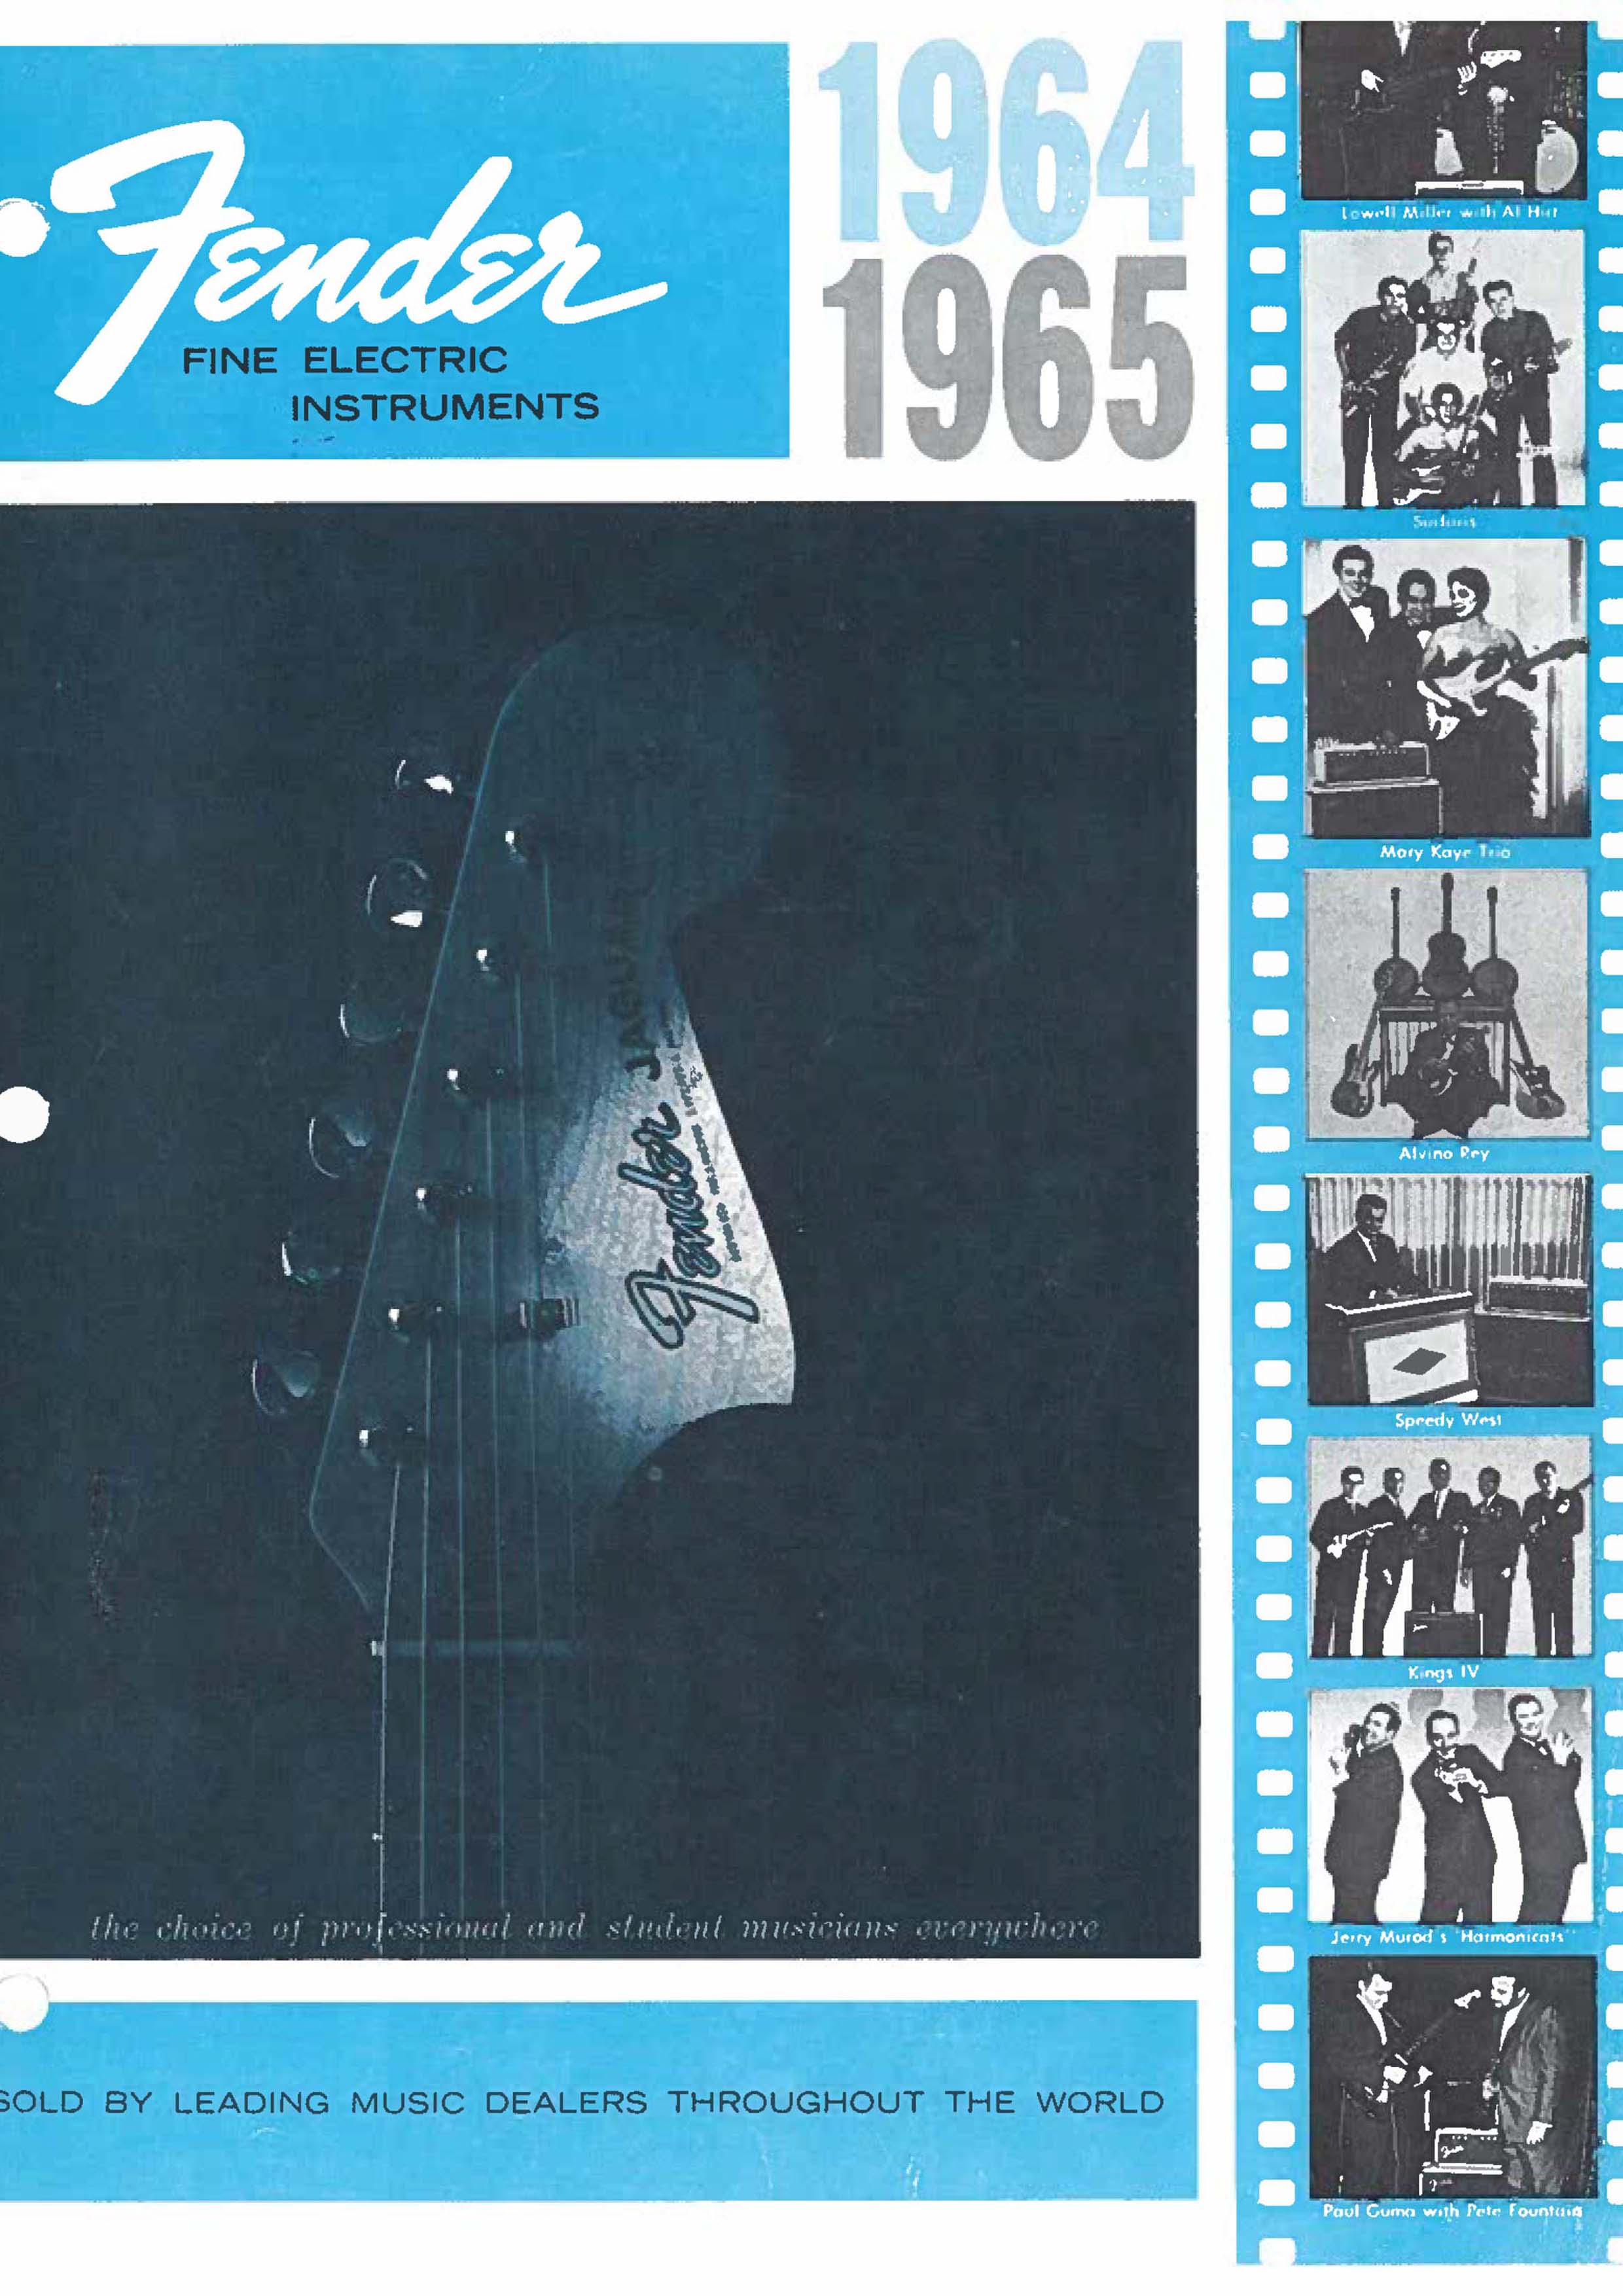 Fender Catalog 1964-65